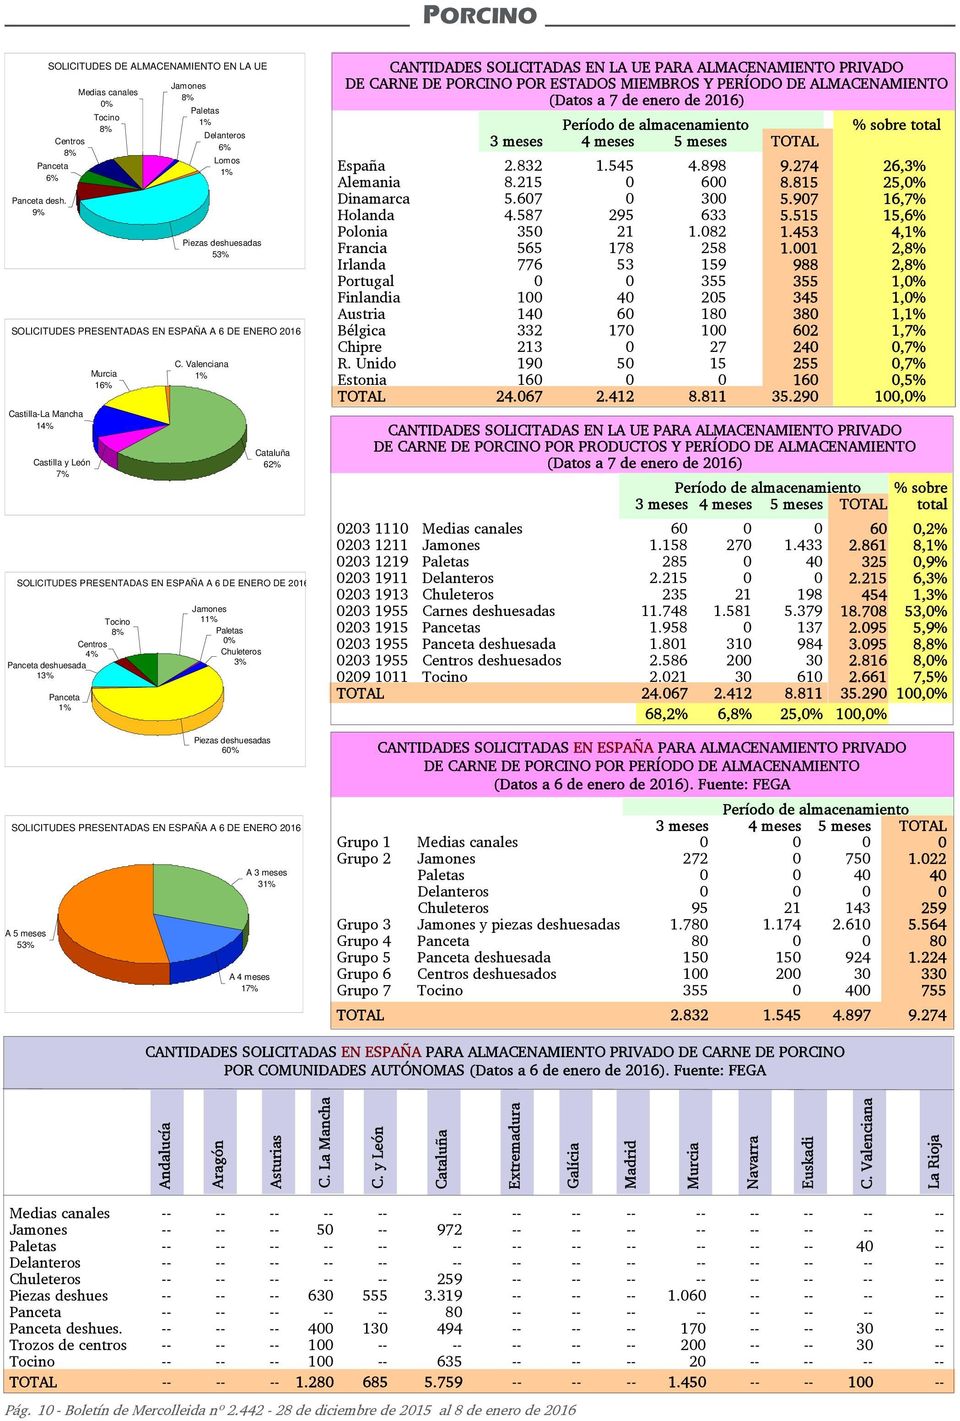 Murcia 16% Jamones 8% Paletas 1% Delanteros 6% Lomos 1% Piezas deshuesadas 53% C.